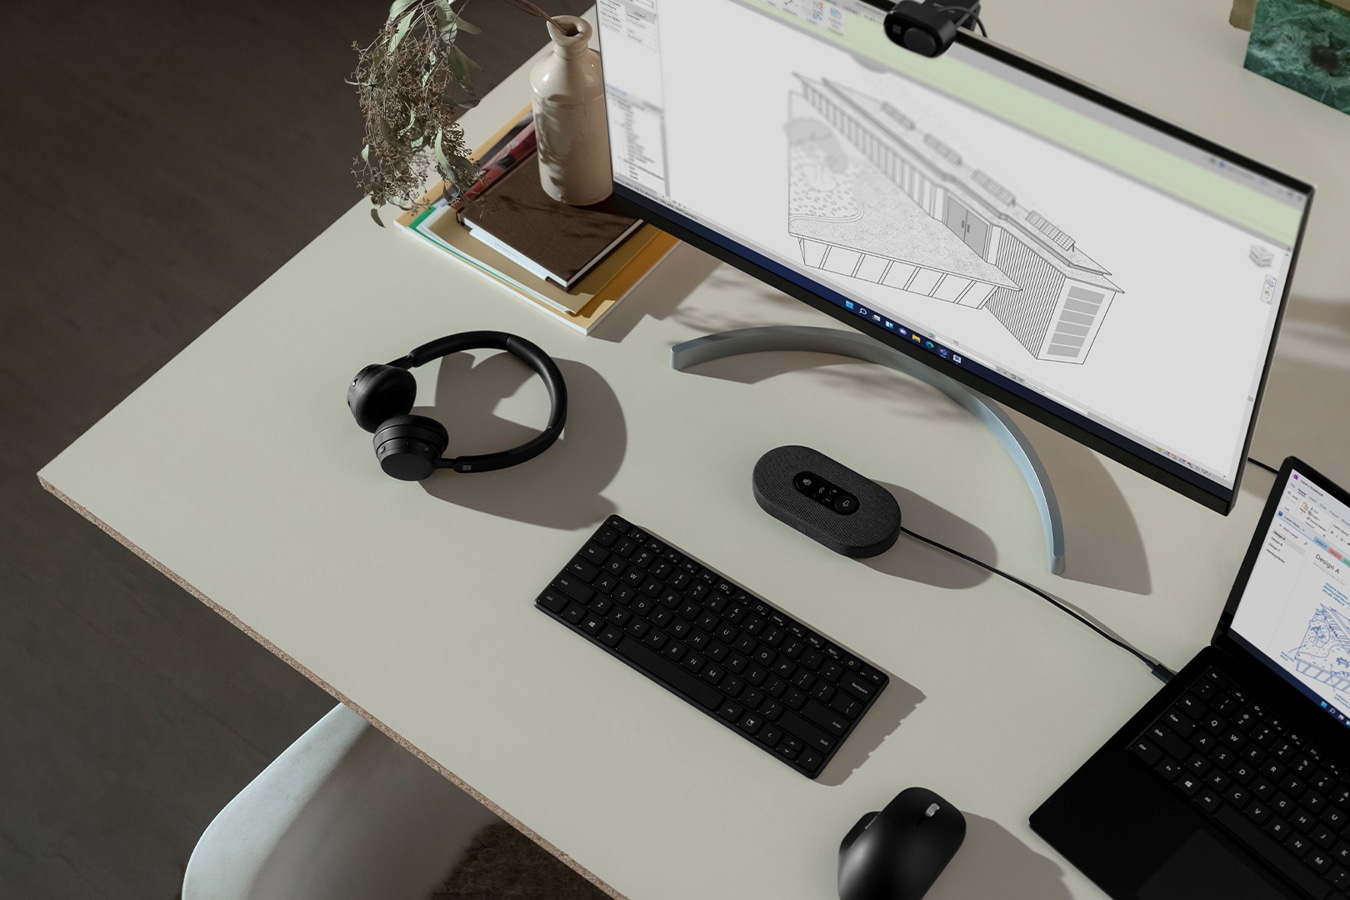 Un dispositivo Surface posato su una scrivania, connesso a un monitor esterno, con vari accessori per Surface vicini